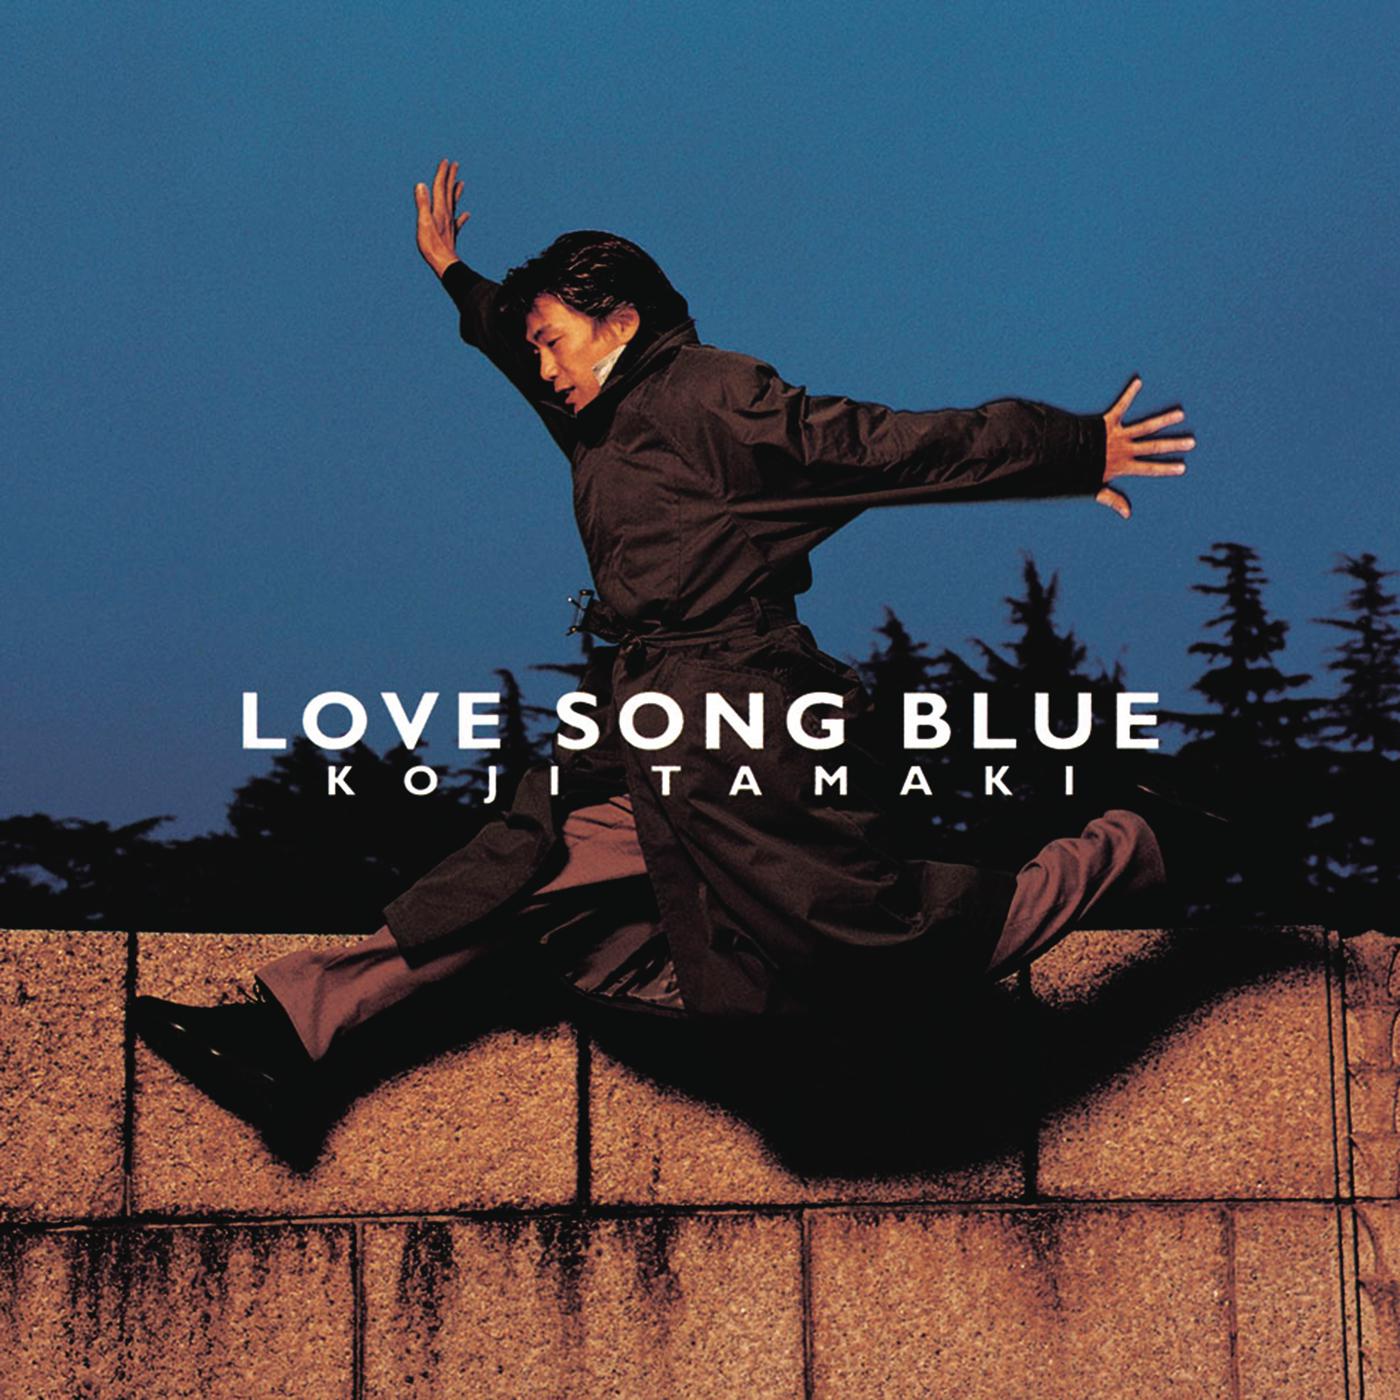 4.LOVE SONG BLUE 5.ニセモノ